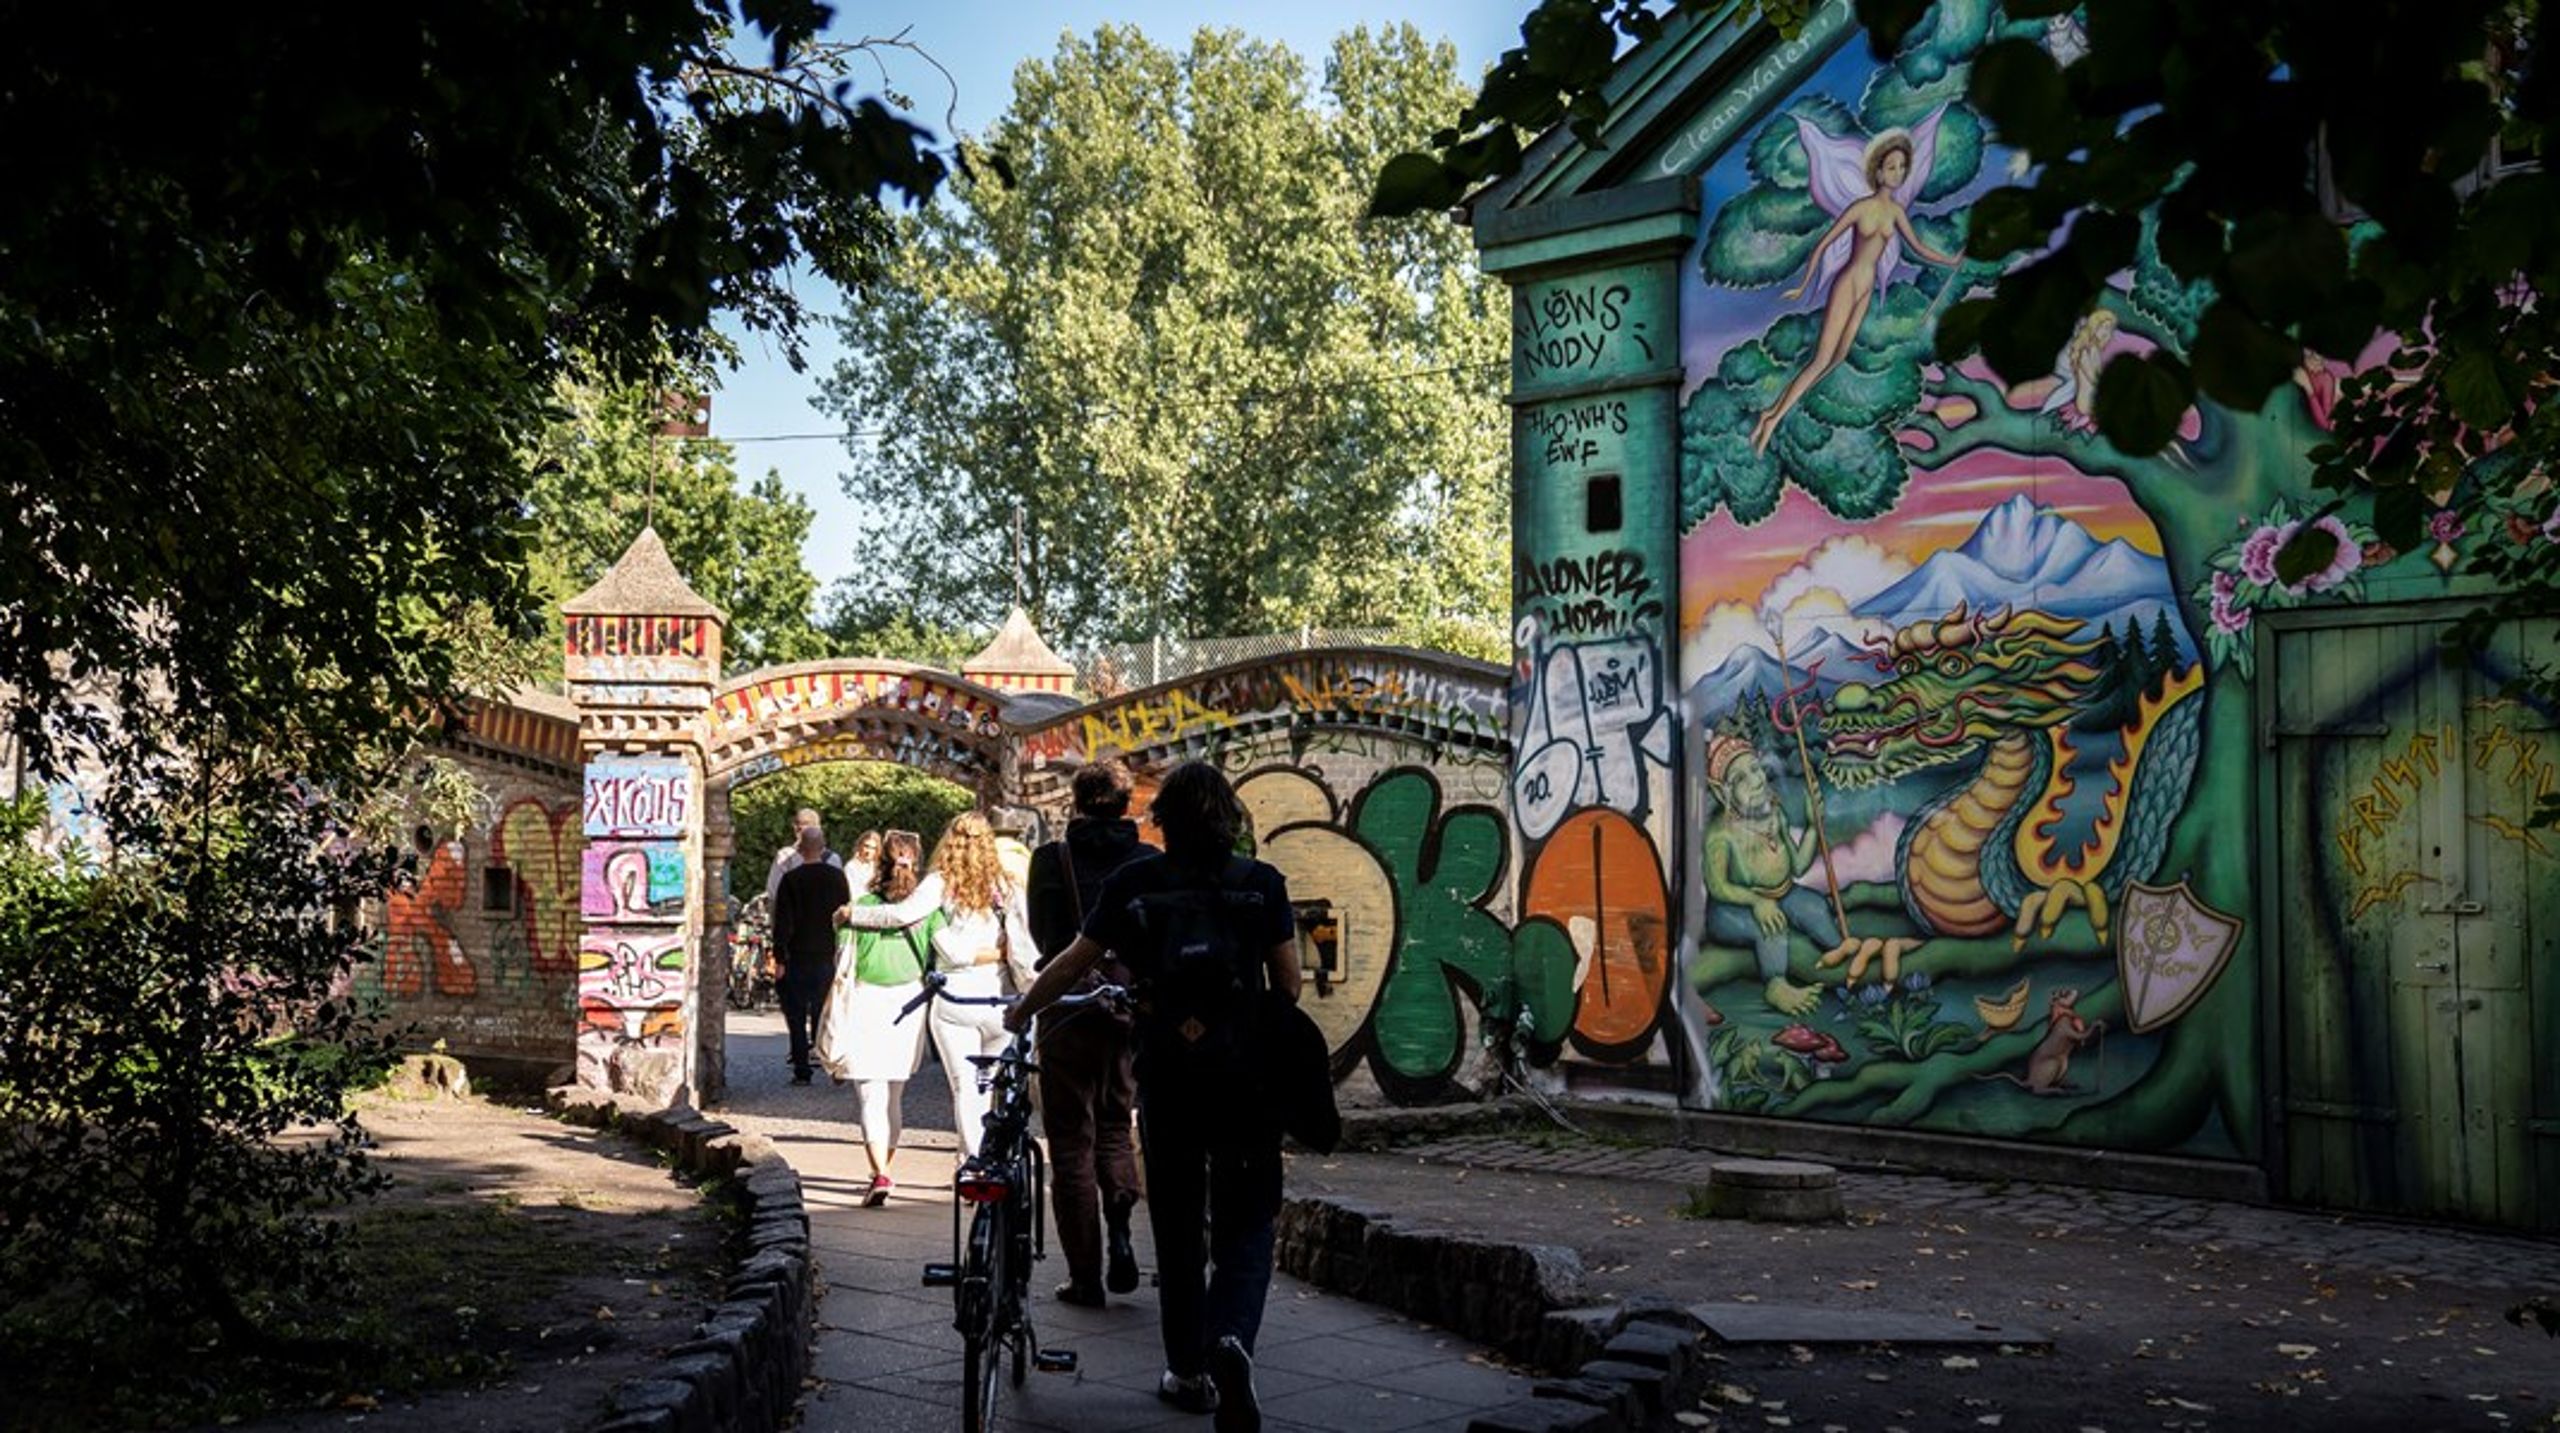 Christiania ønsker at bygge almene bofællesskaber, hvor vi hellere vil bygge flere mindre bygninger
end få store. På denne måde kan vi integrere de nye bofællesskaber både i deres
placering og skala samt socialt og kulturelt, skriver Mette Prag.